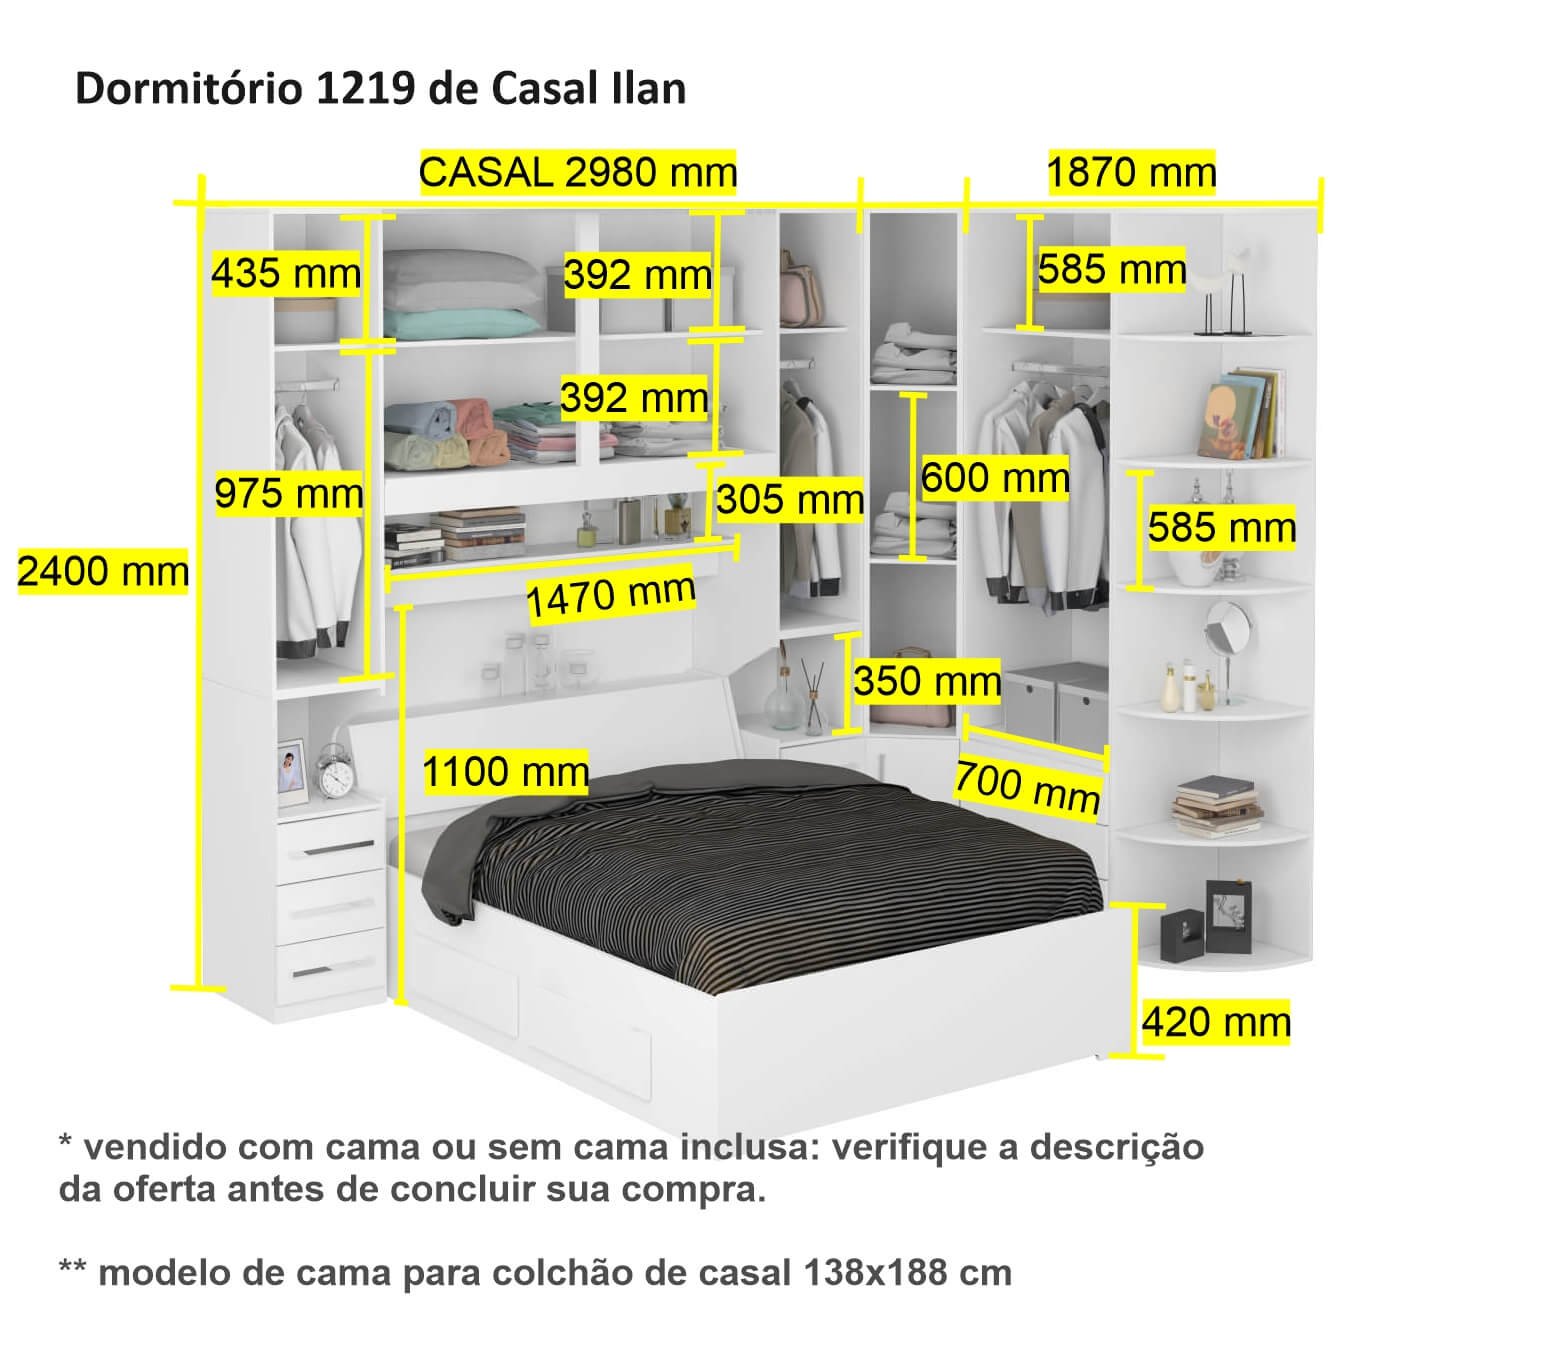 Dormitório de Casal sem Cama 1219s Castanho - 4